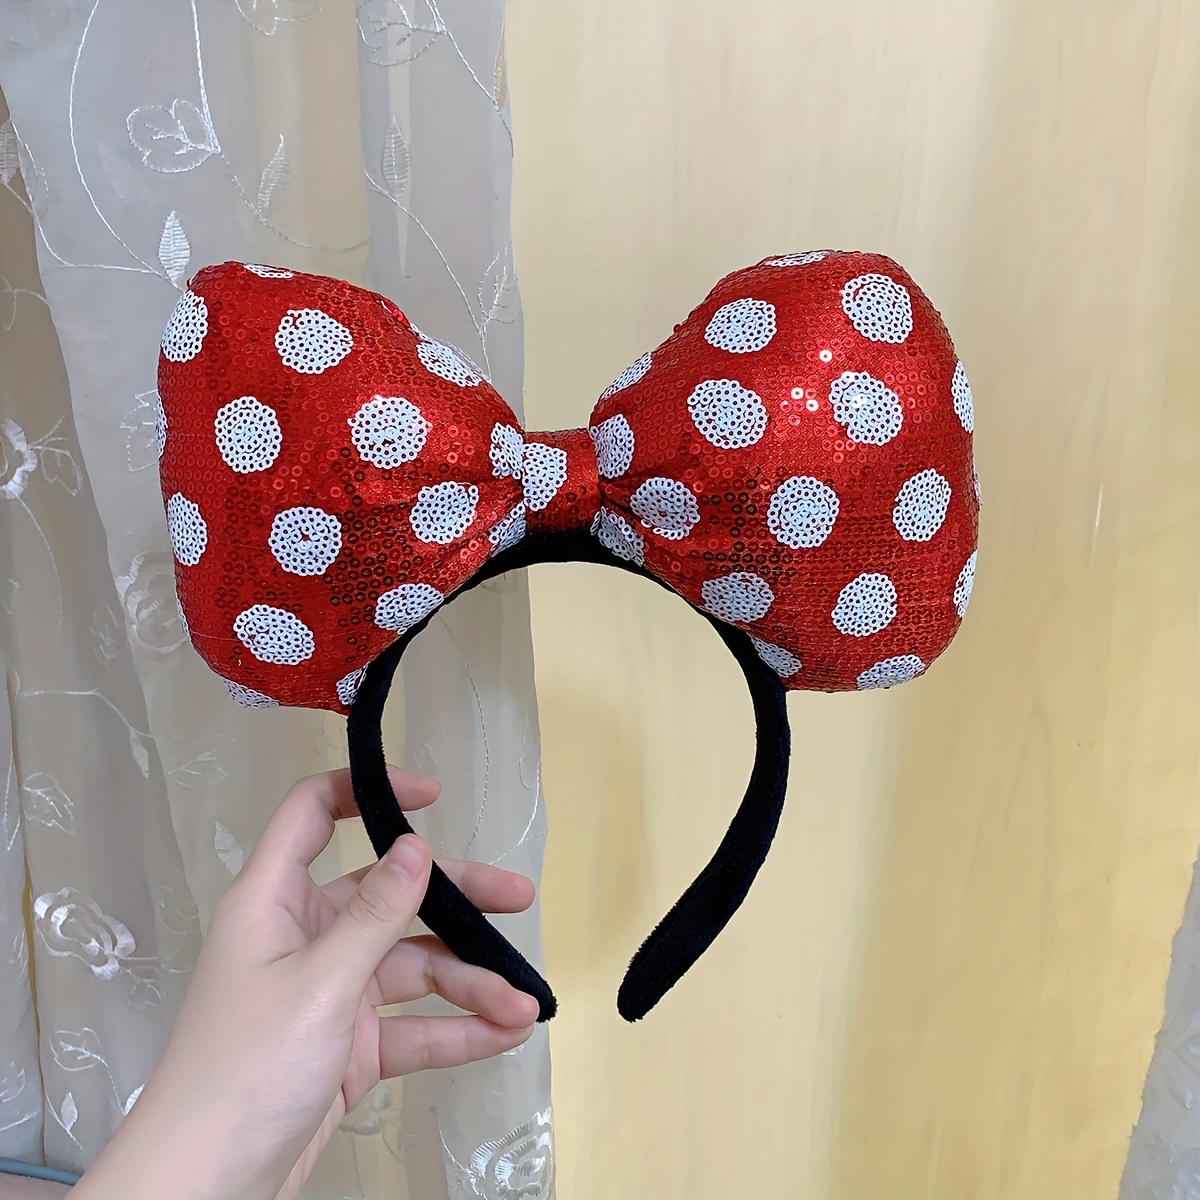 Diadema orejas Pastel Polka Dot Minnie Mouse Disney